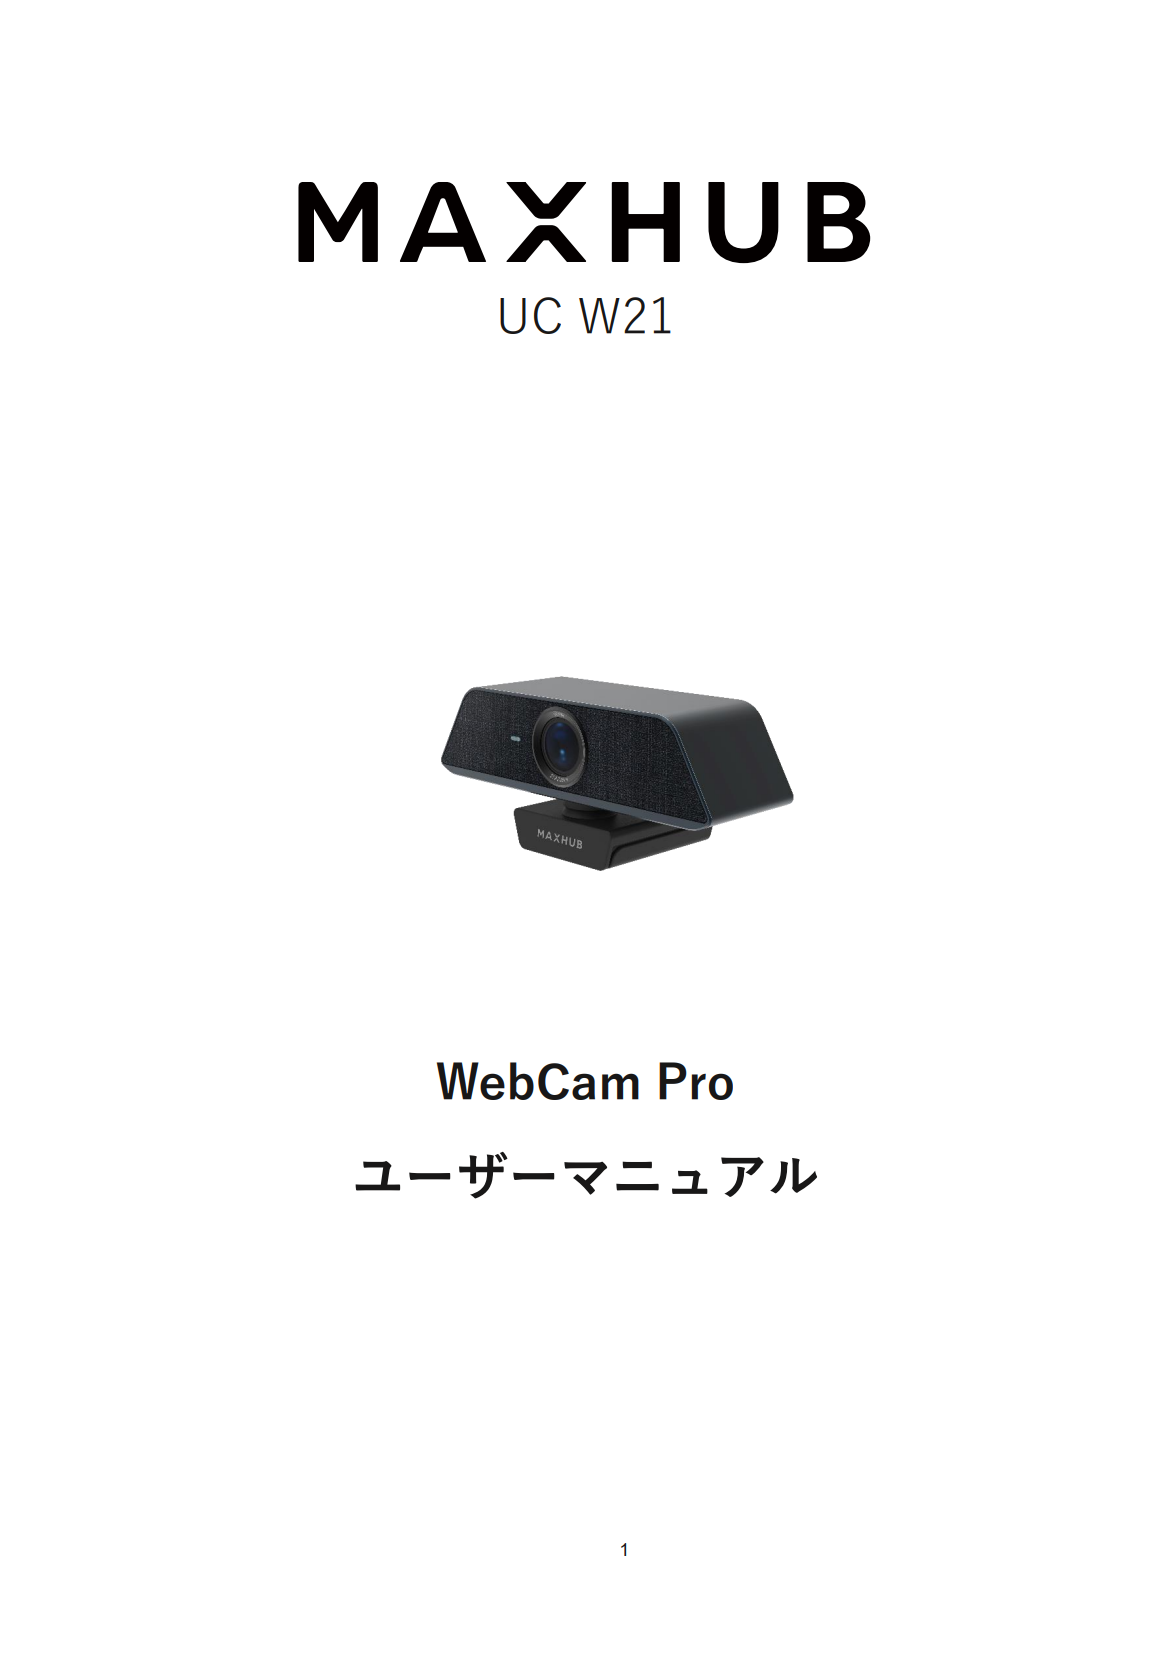 WebCam Pro